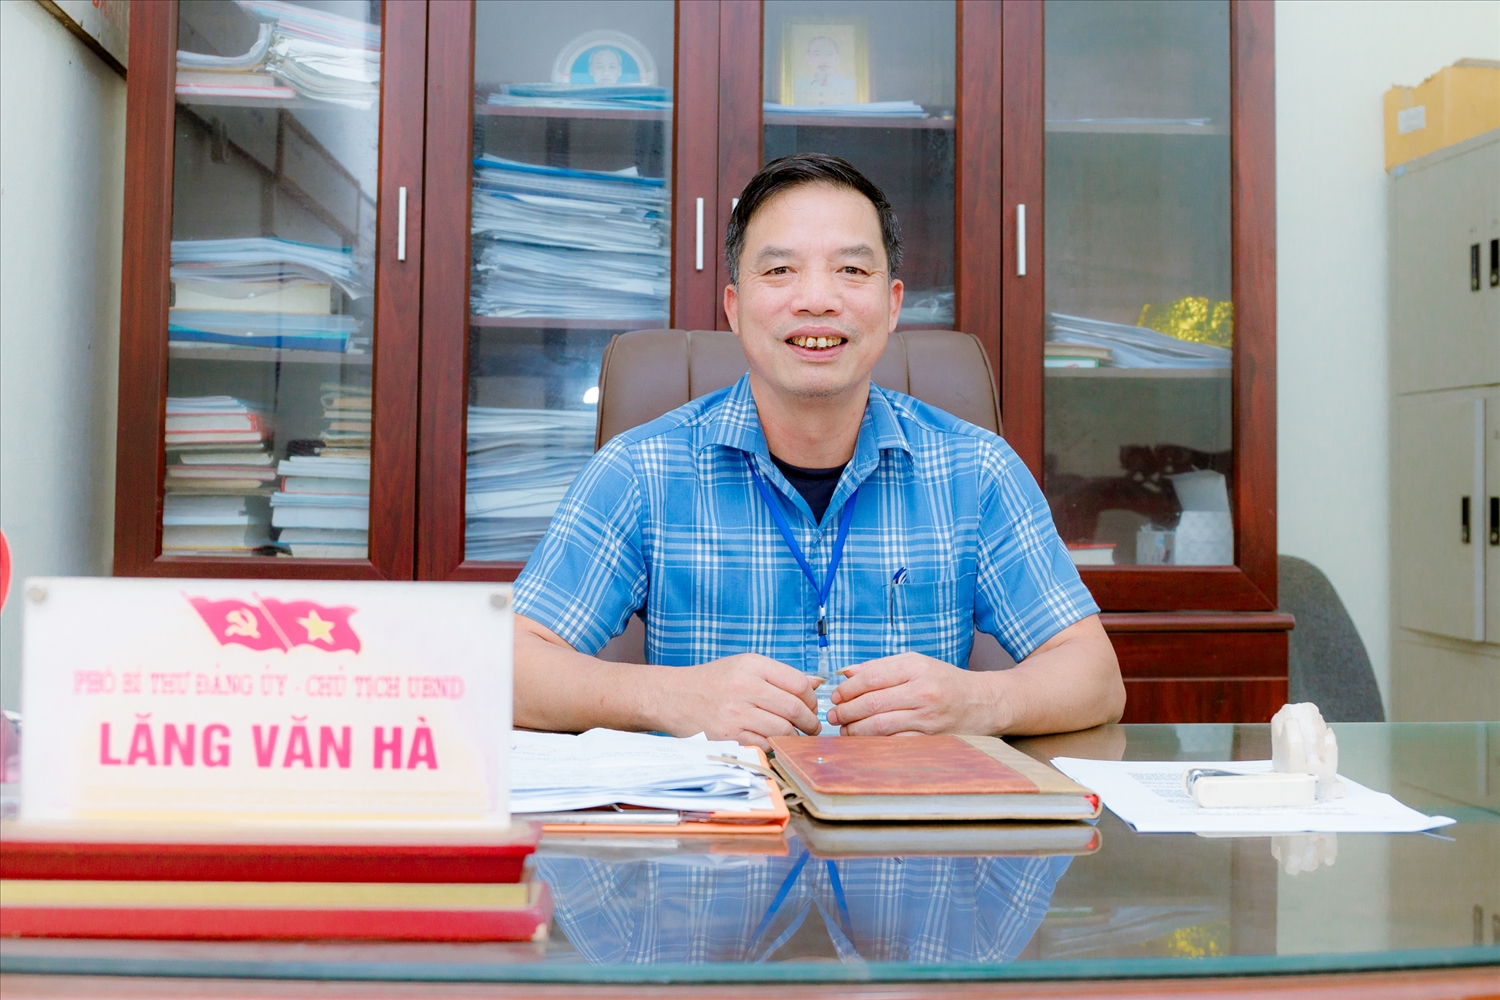 Ông Lăng Văn Hà, Chủ tịch UBND xã Ba Vì, hiện toàn xã có 309 hộ gia đình theo nghề làm thuốc Nam, có 9 hợp tác xã thuốc Nam được tổ chức và hoạt động theo Luật Hợp tác xã